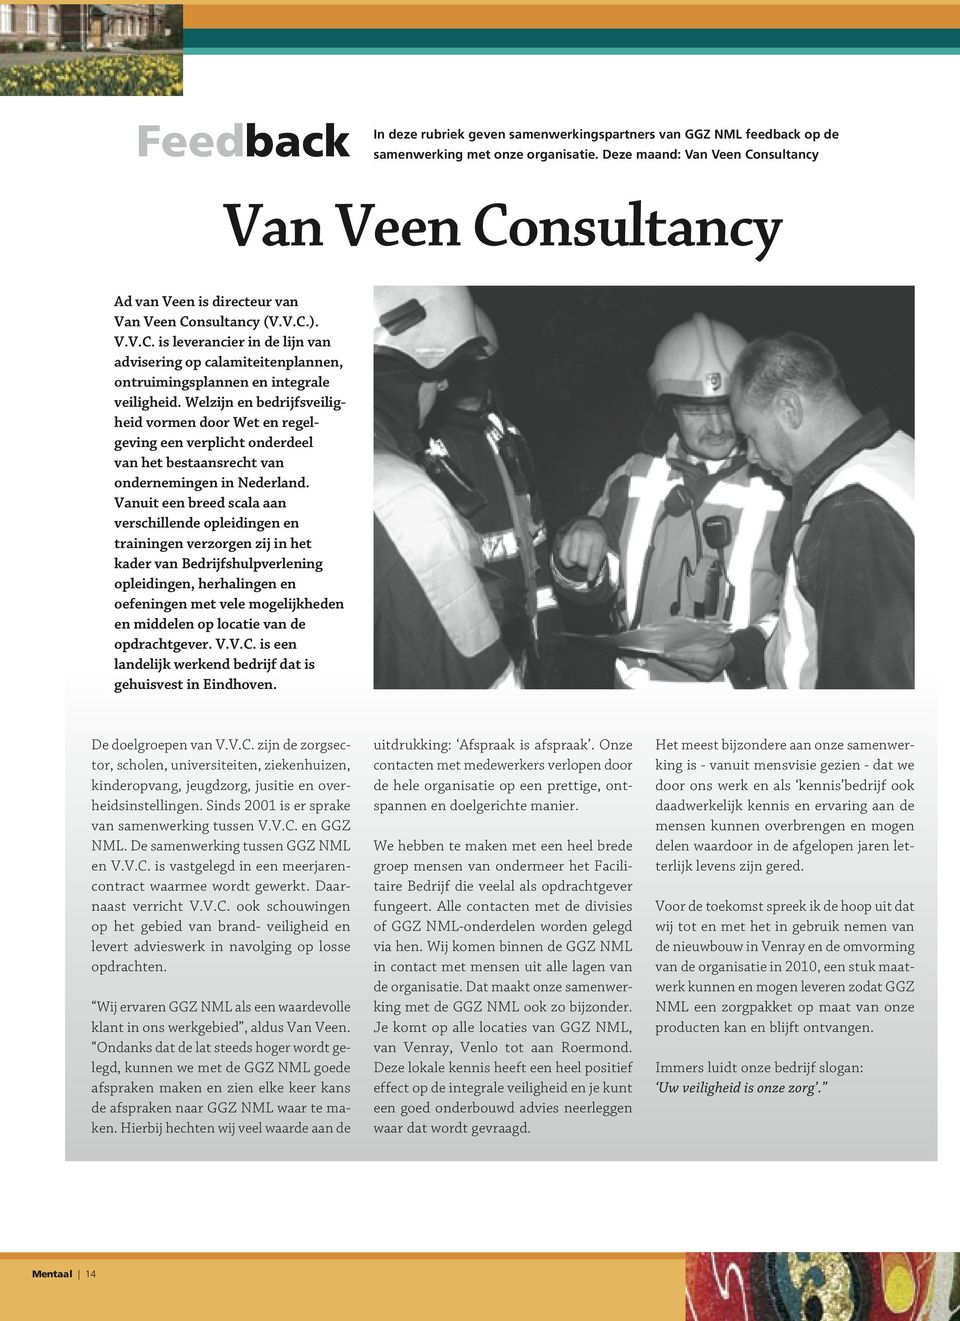 Welzijn en bedrijfsveiligheid vormen door Wet en regelgeving een verplicht onderdeel van het bestaansrecht van ondernemingen in Nederland.